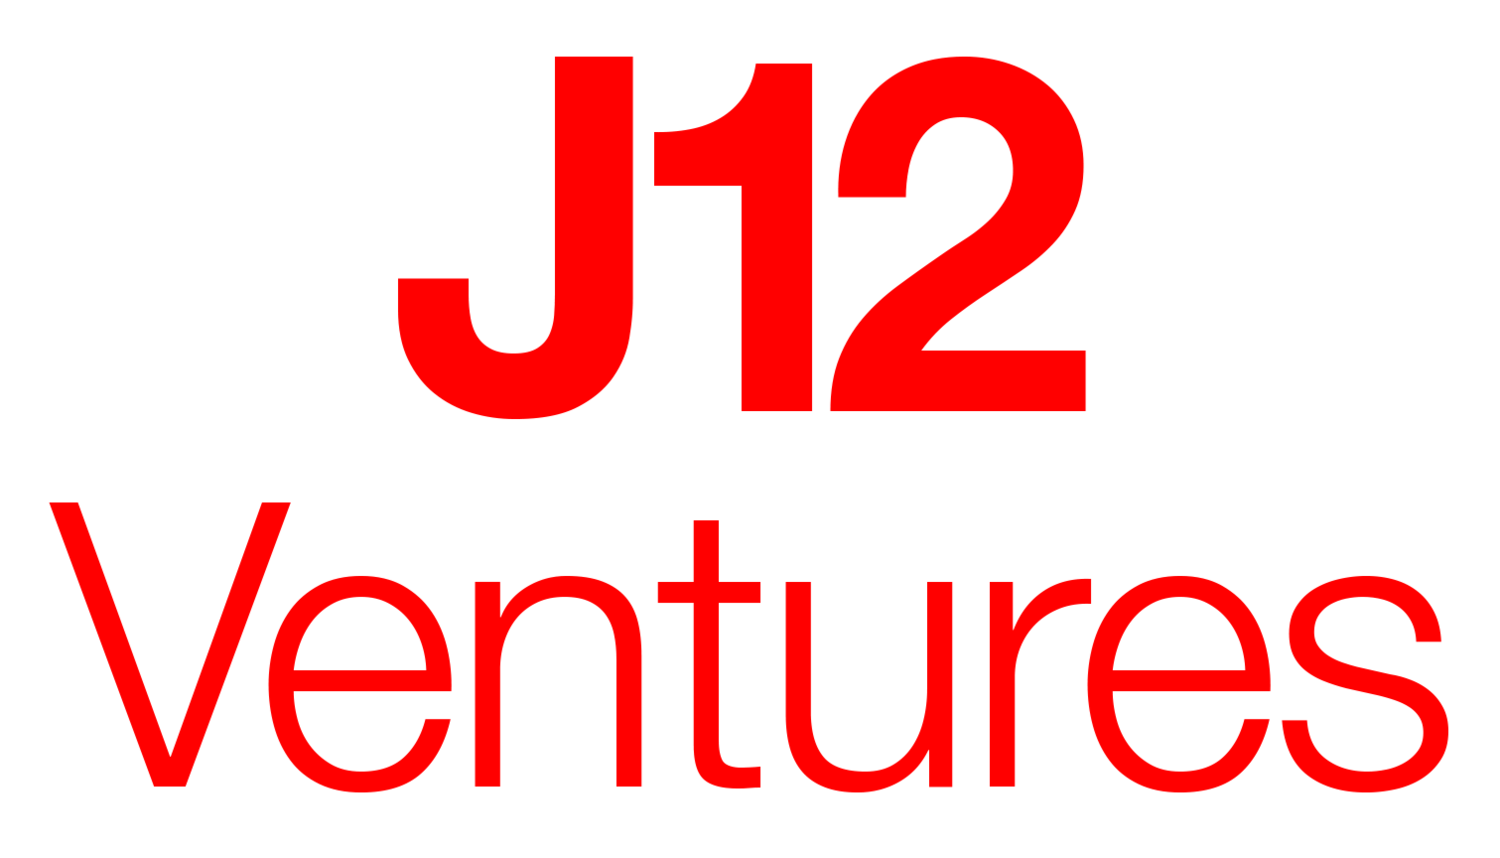 J12 Ventures